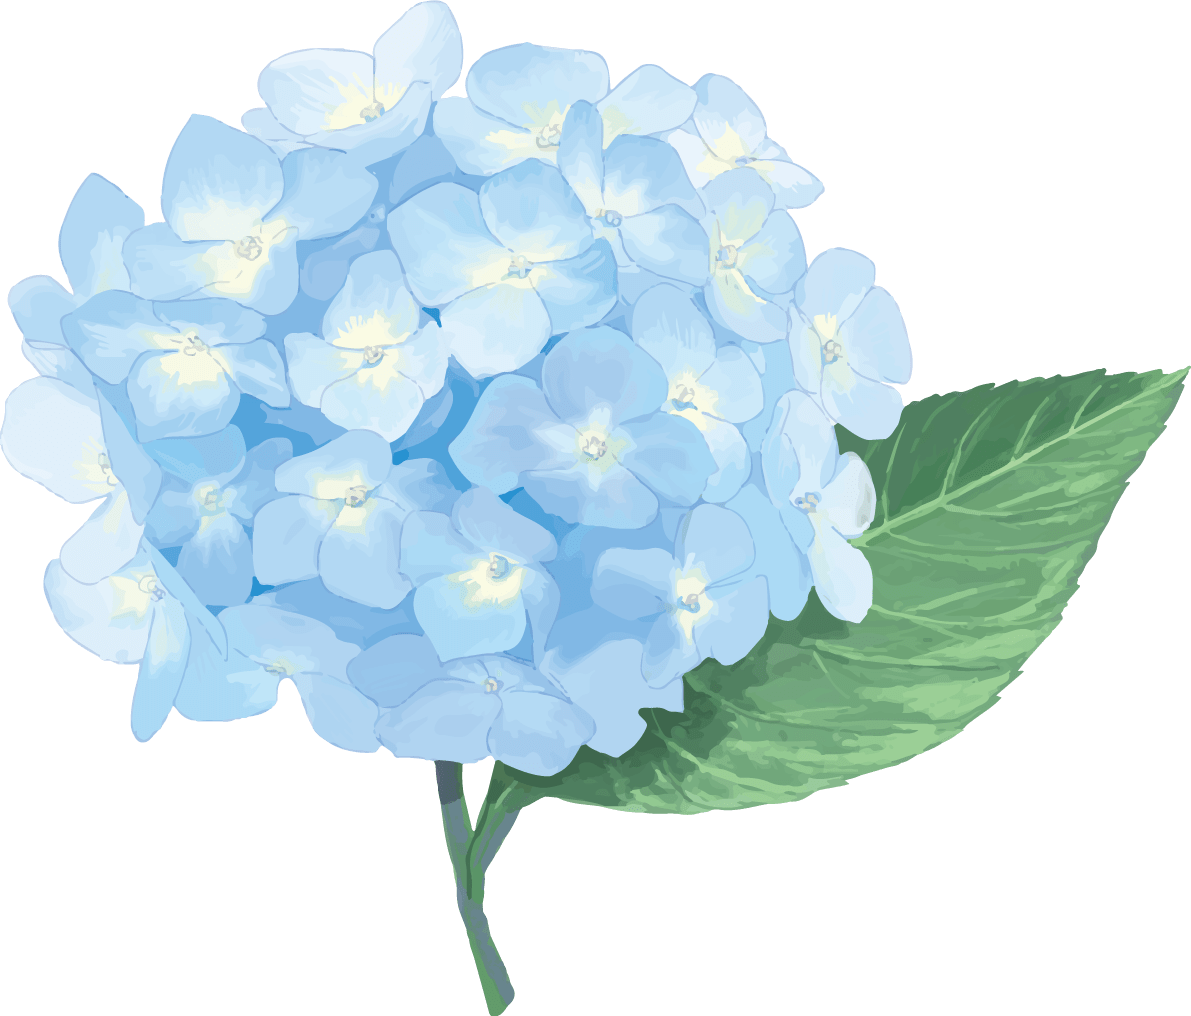 おしゃれ綺麗な薄い水色青系のアジサイイラスト(梅雨